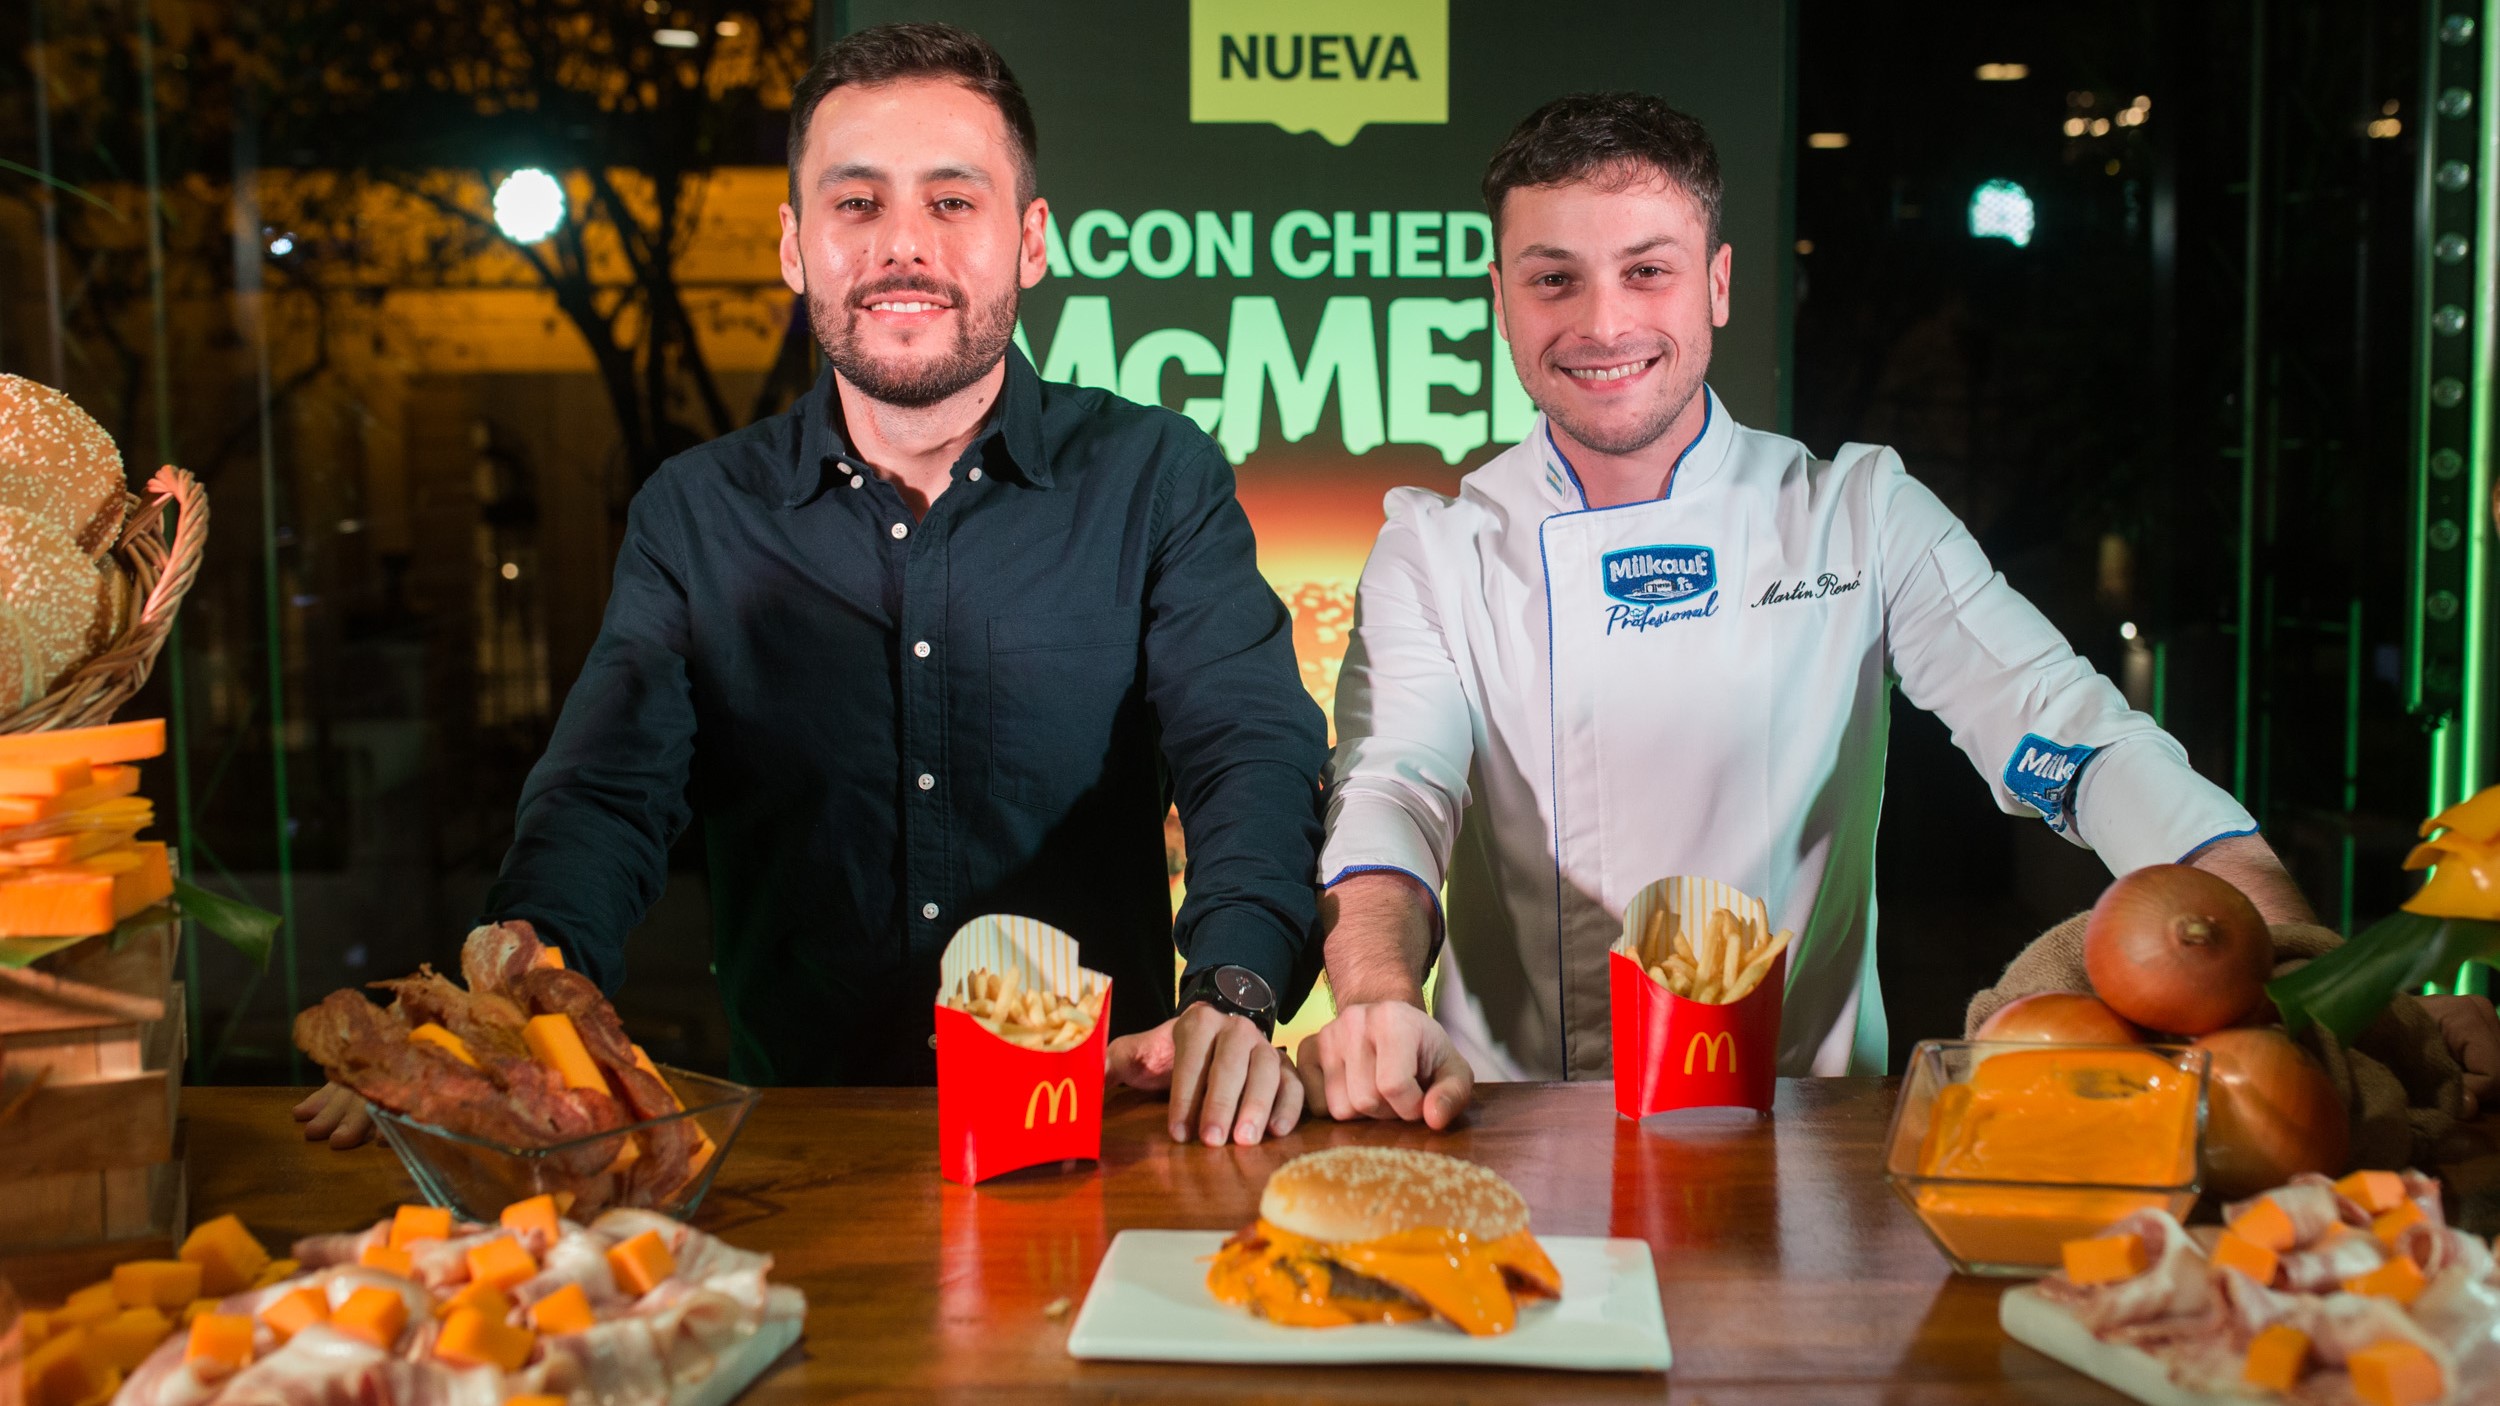 [Argentina] McDonald’s y su gran apuesta: la nueva Bacon Cheddar McMelt, con mucho muchísimo cheddar, ideal para fanáticos de las propuestas más indulgentes